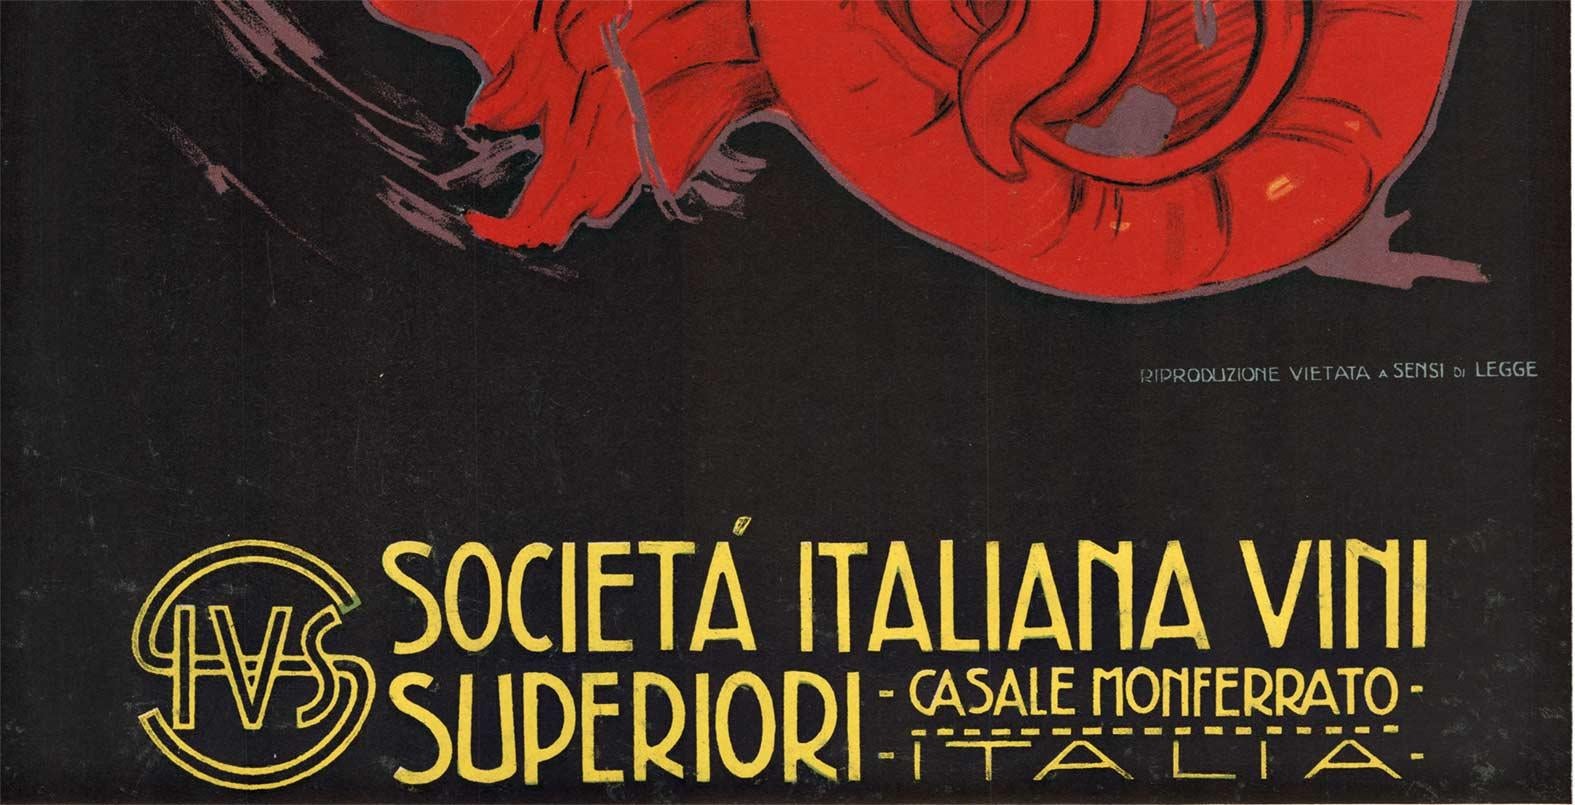 Original Vini di Lusso Italian wine vintage poster  1922 - Print by Plinio Codognato